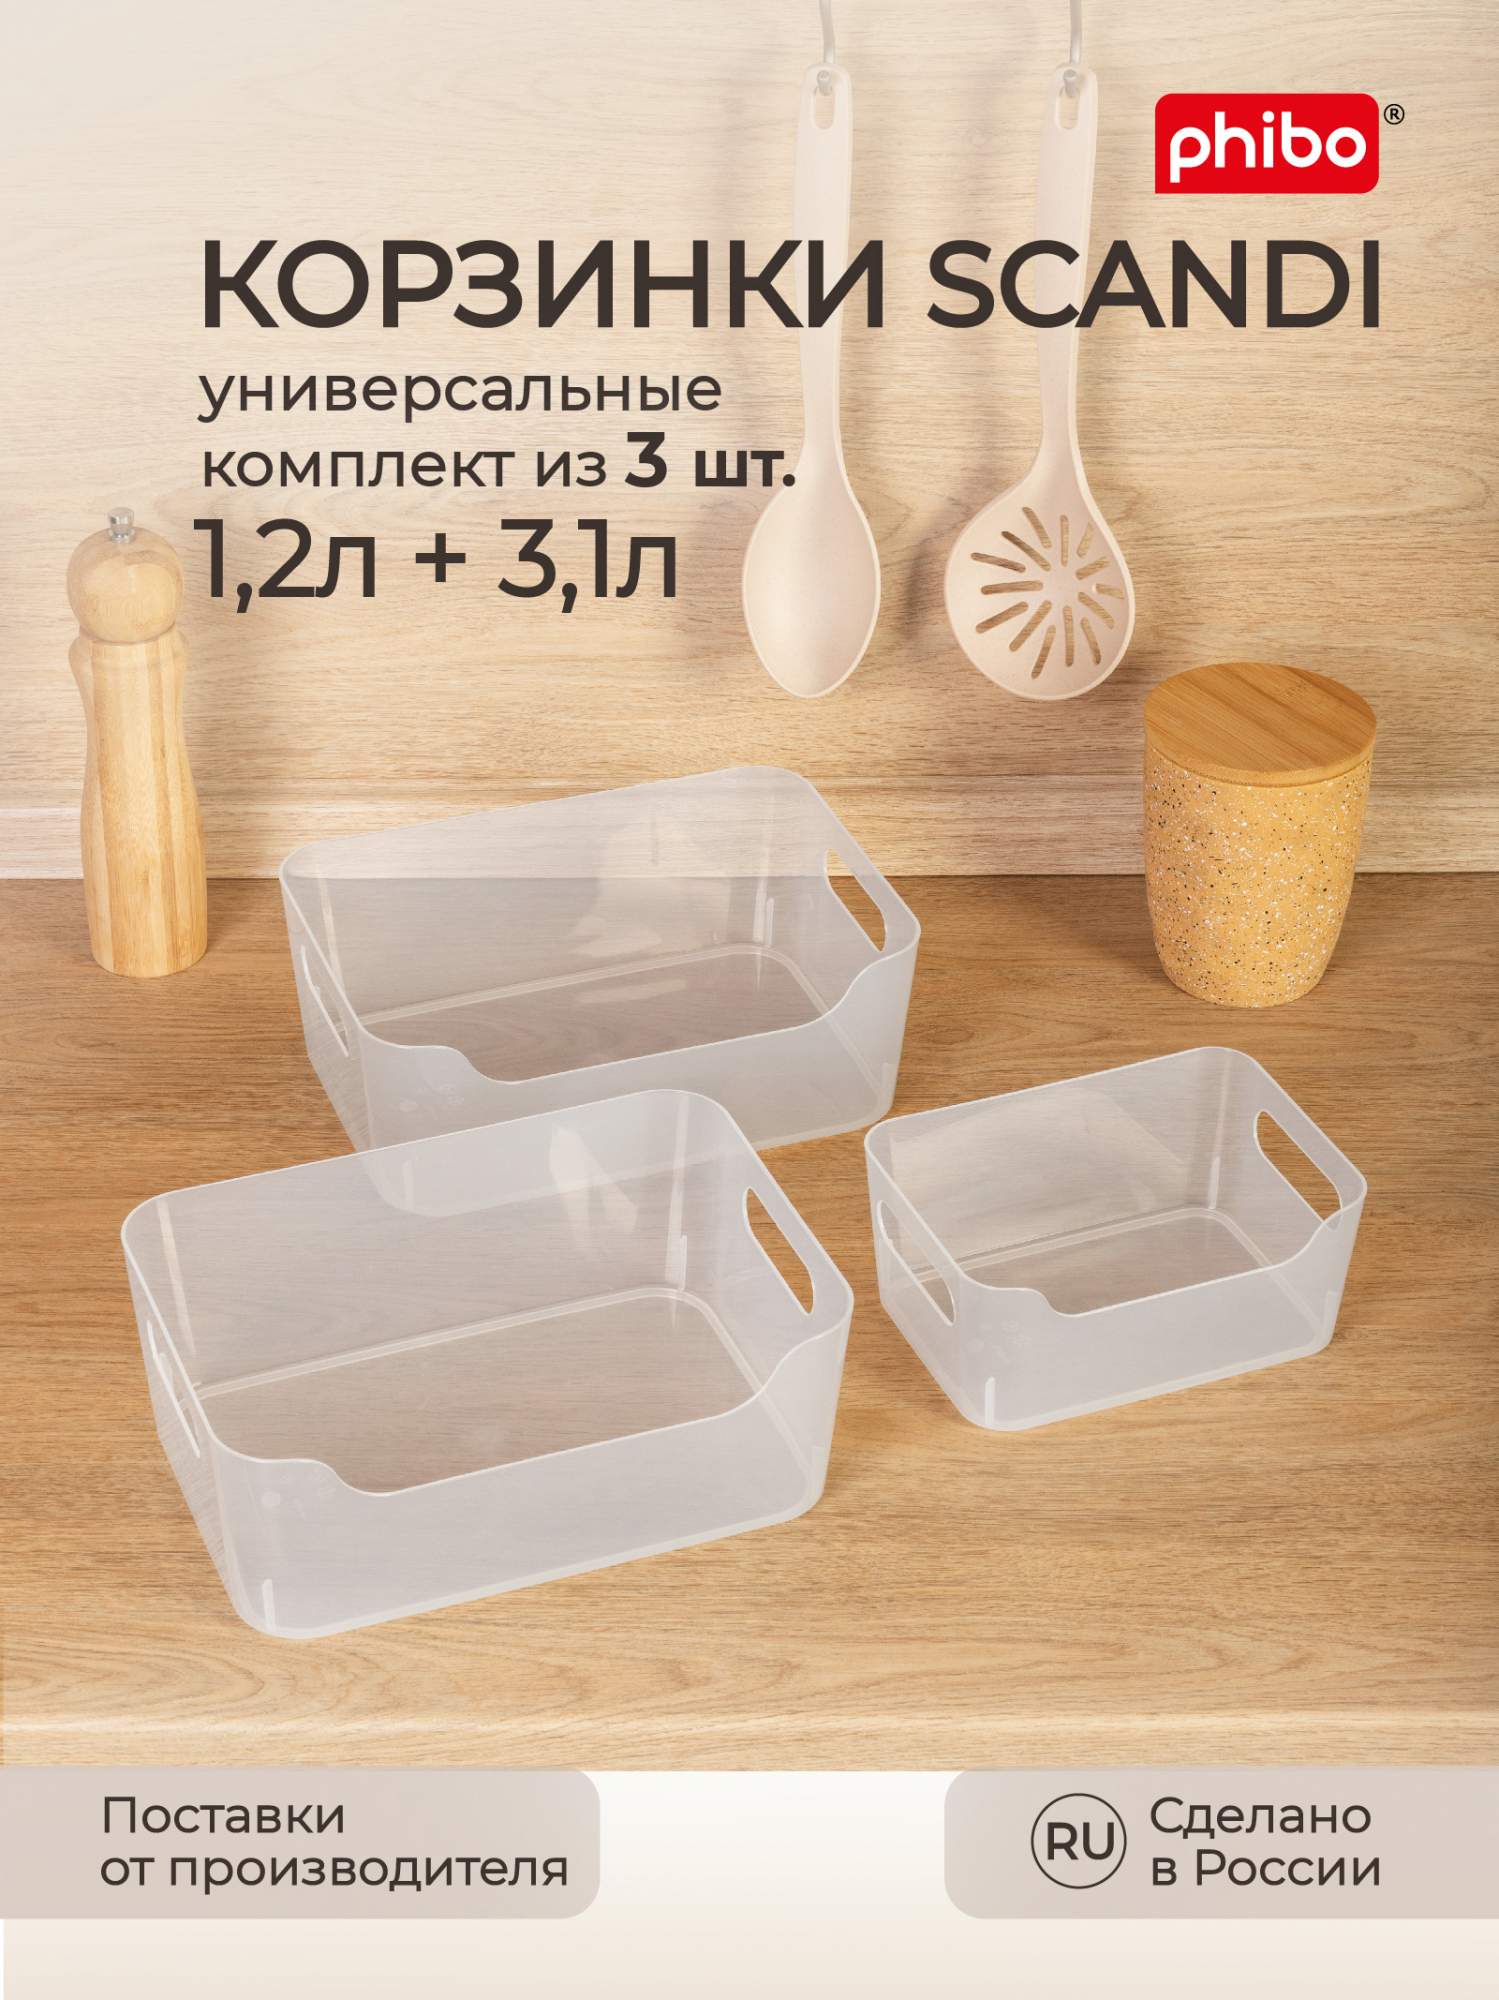 Комплект корзинок универсальных для холодильника Scandi 1,2 л+2х3,1 л, 3 шт